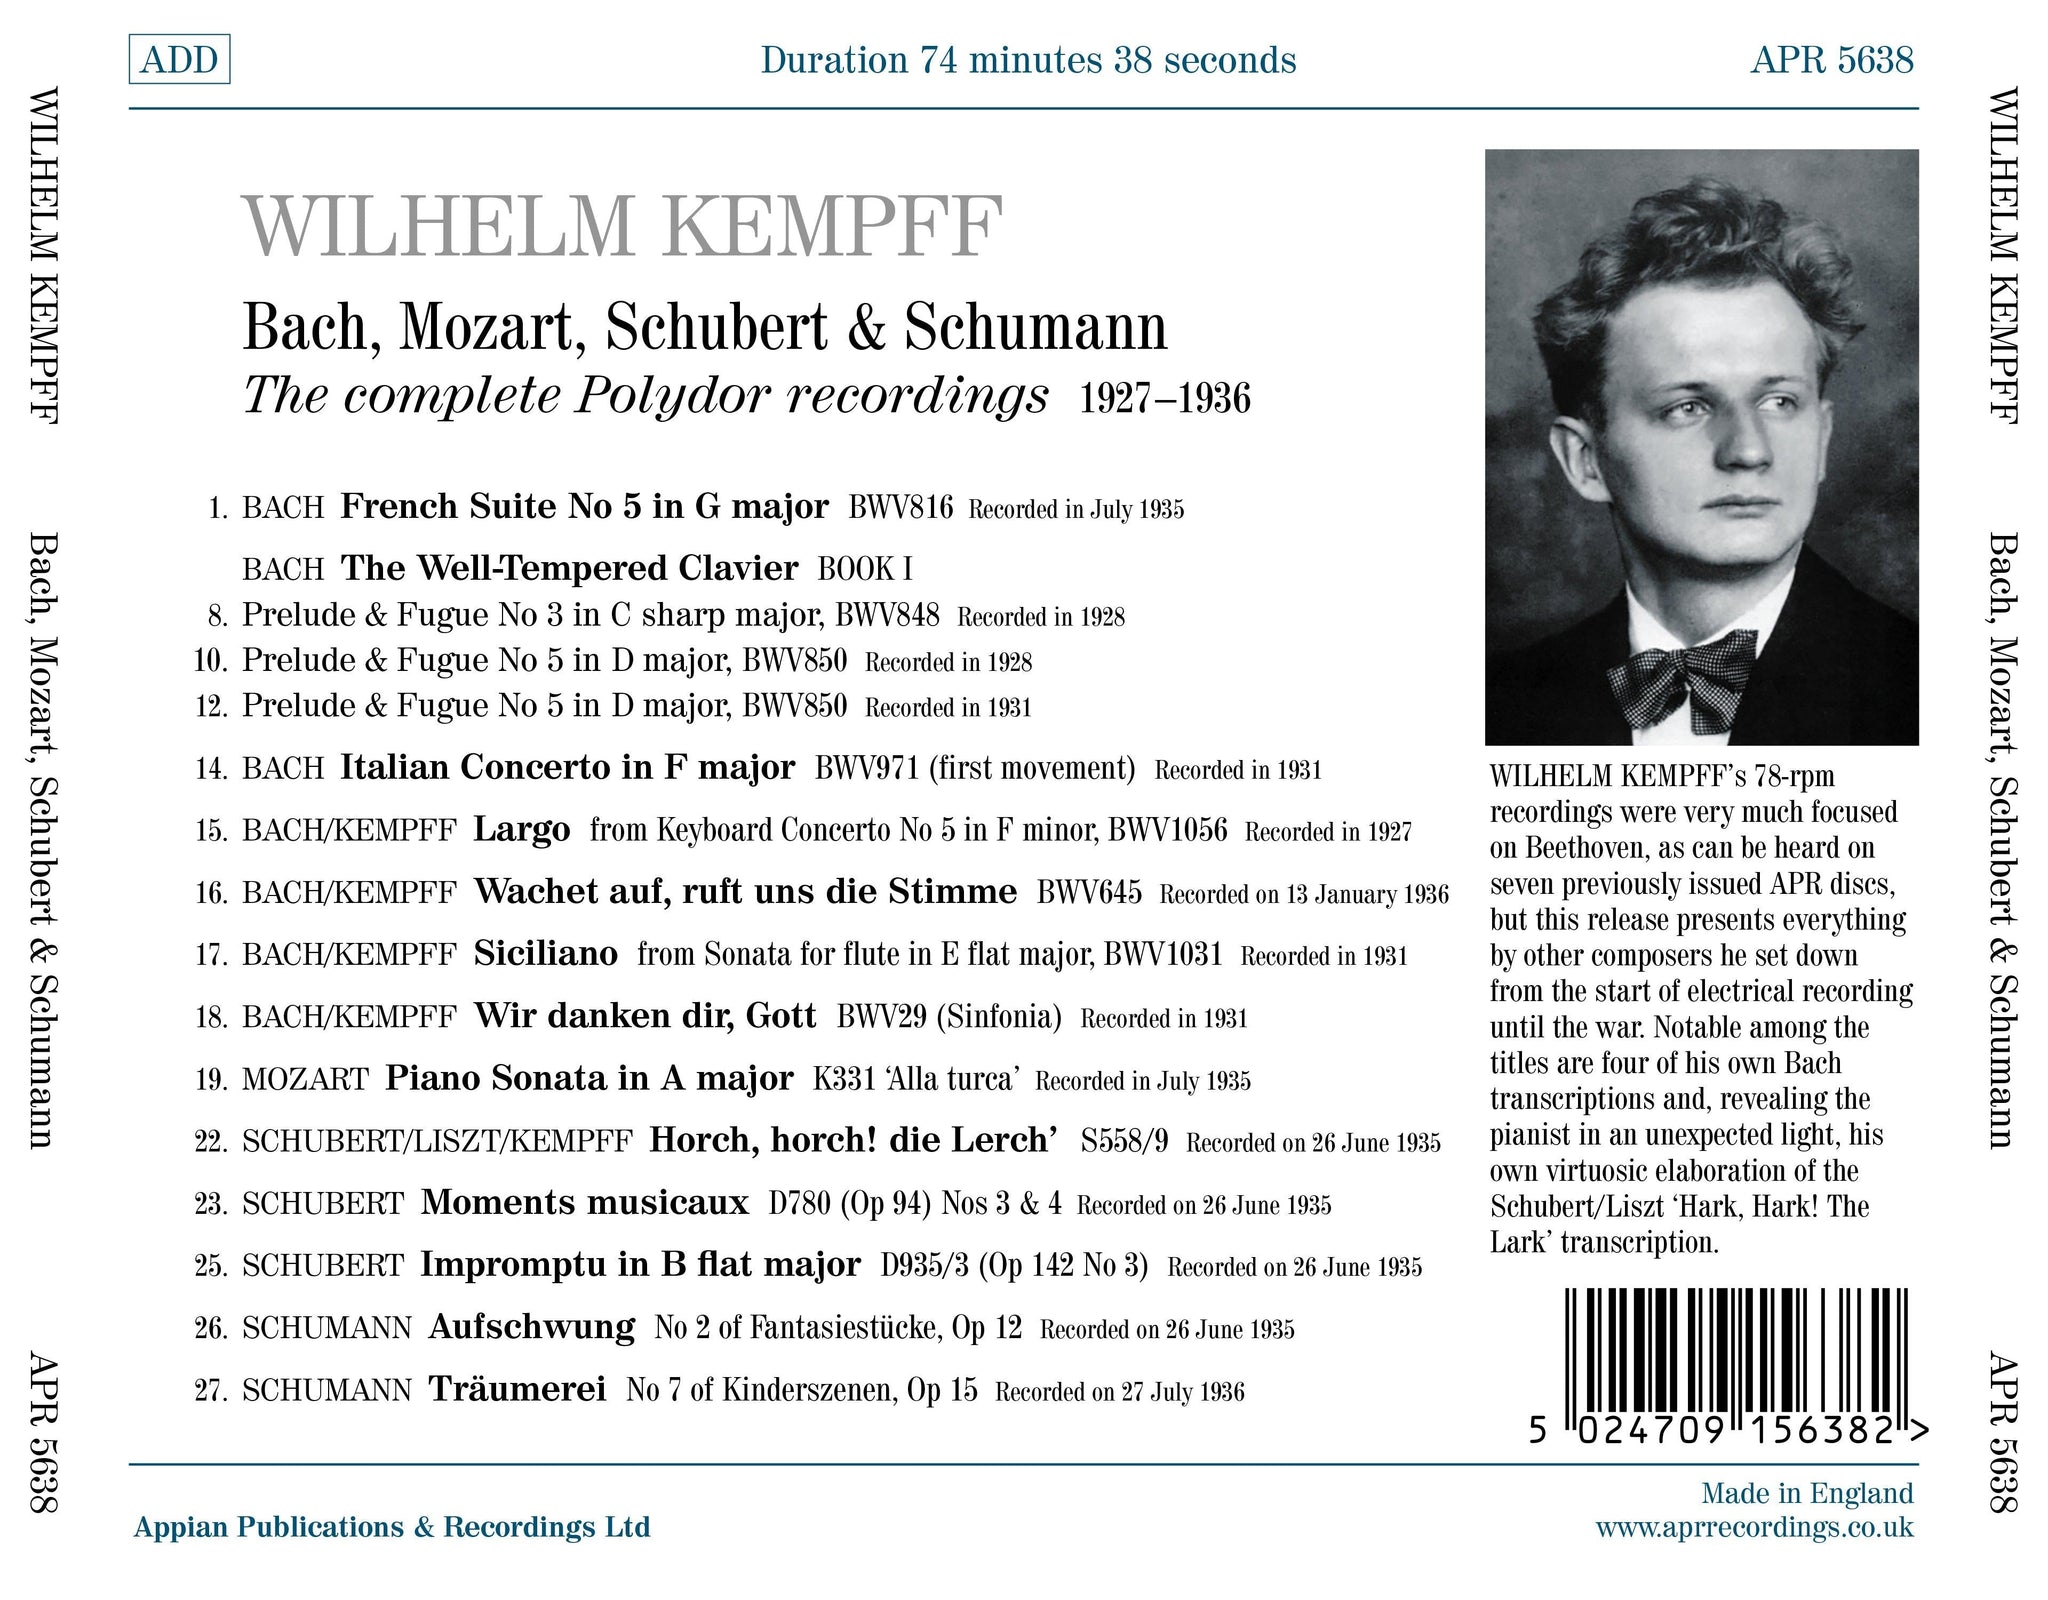 Bach, Mozart, Schubert, Schumann: The Complete Polydor Recordings (1927-1936) / Kempff - ArkivMusic